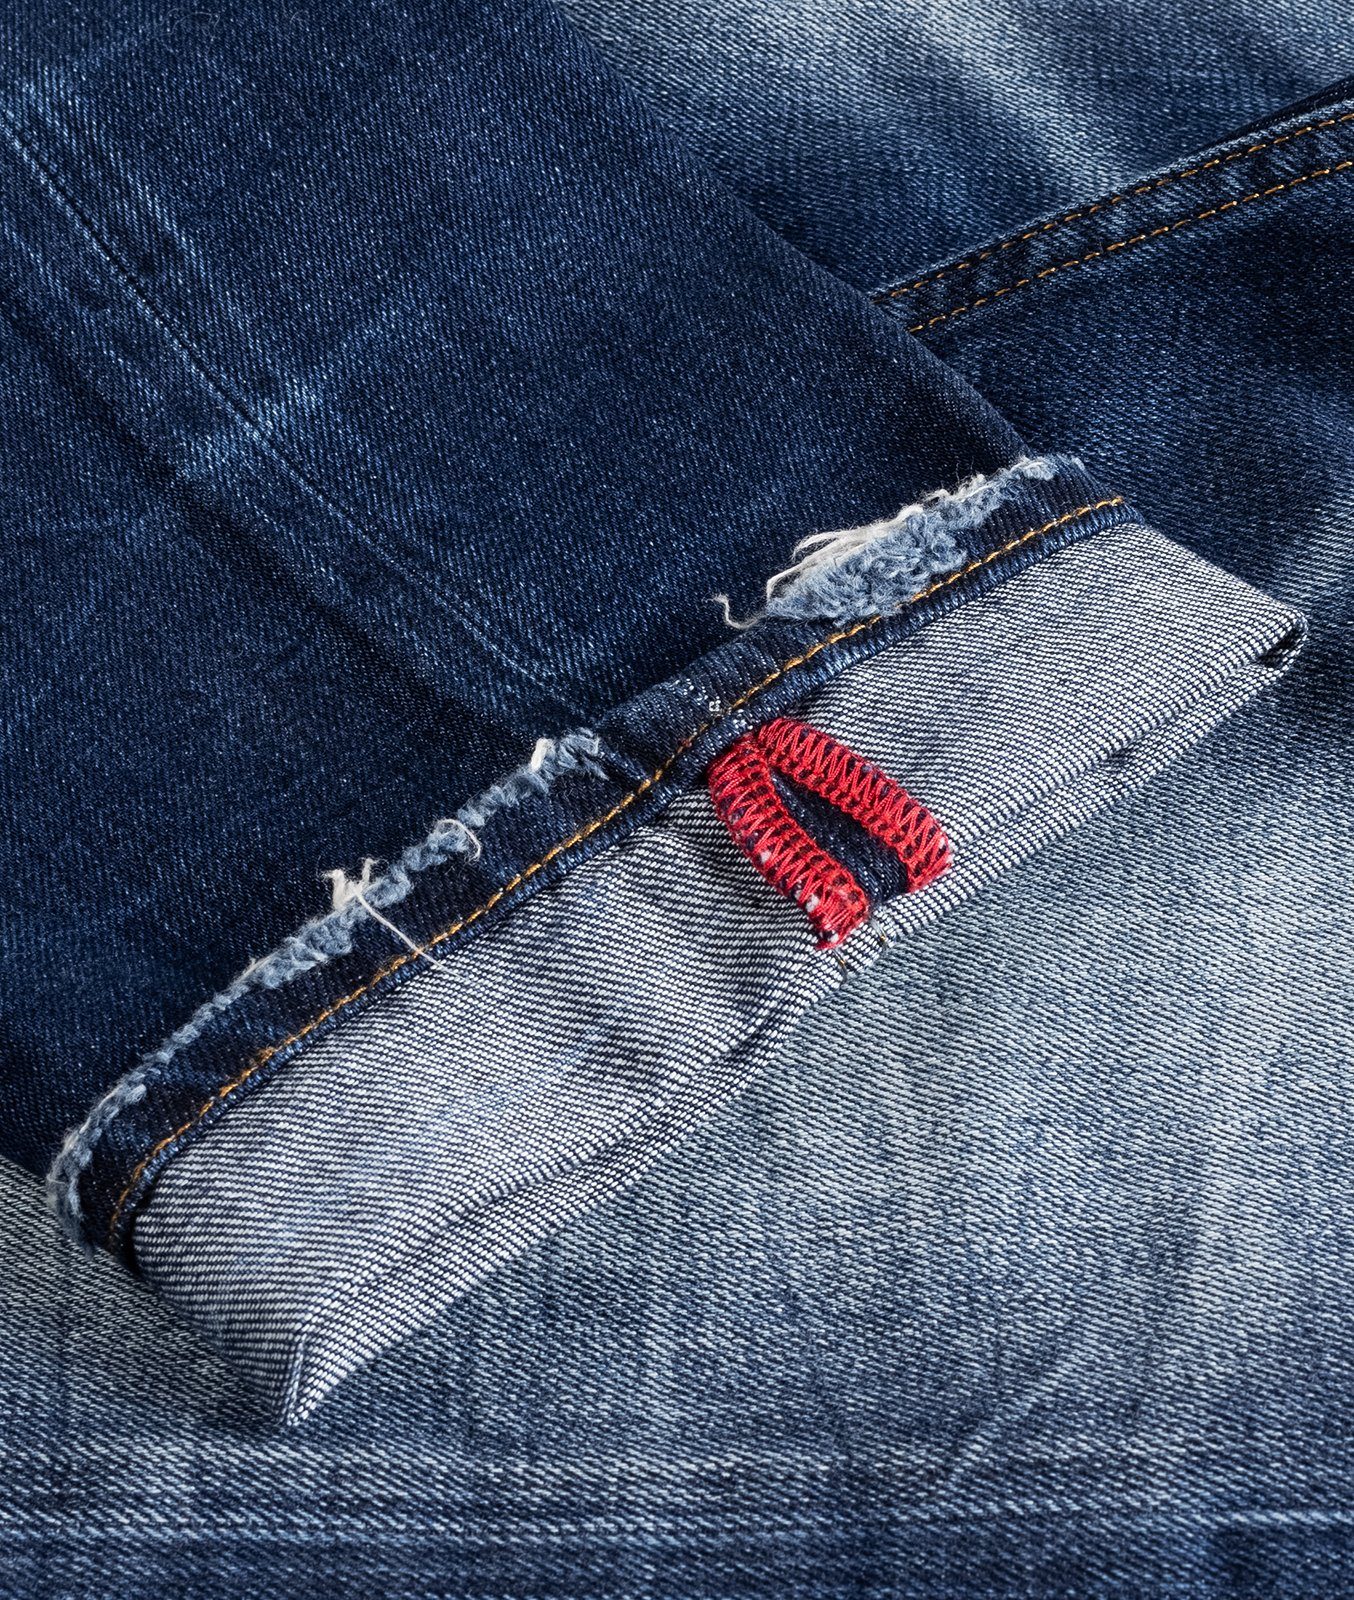 Indumentum Regular-fit-Jeans Herren IR-501 Stonewashed Jeans Blau